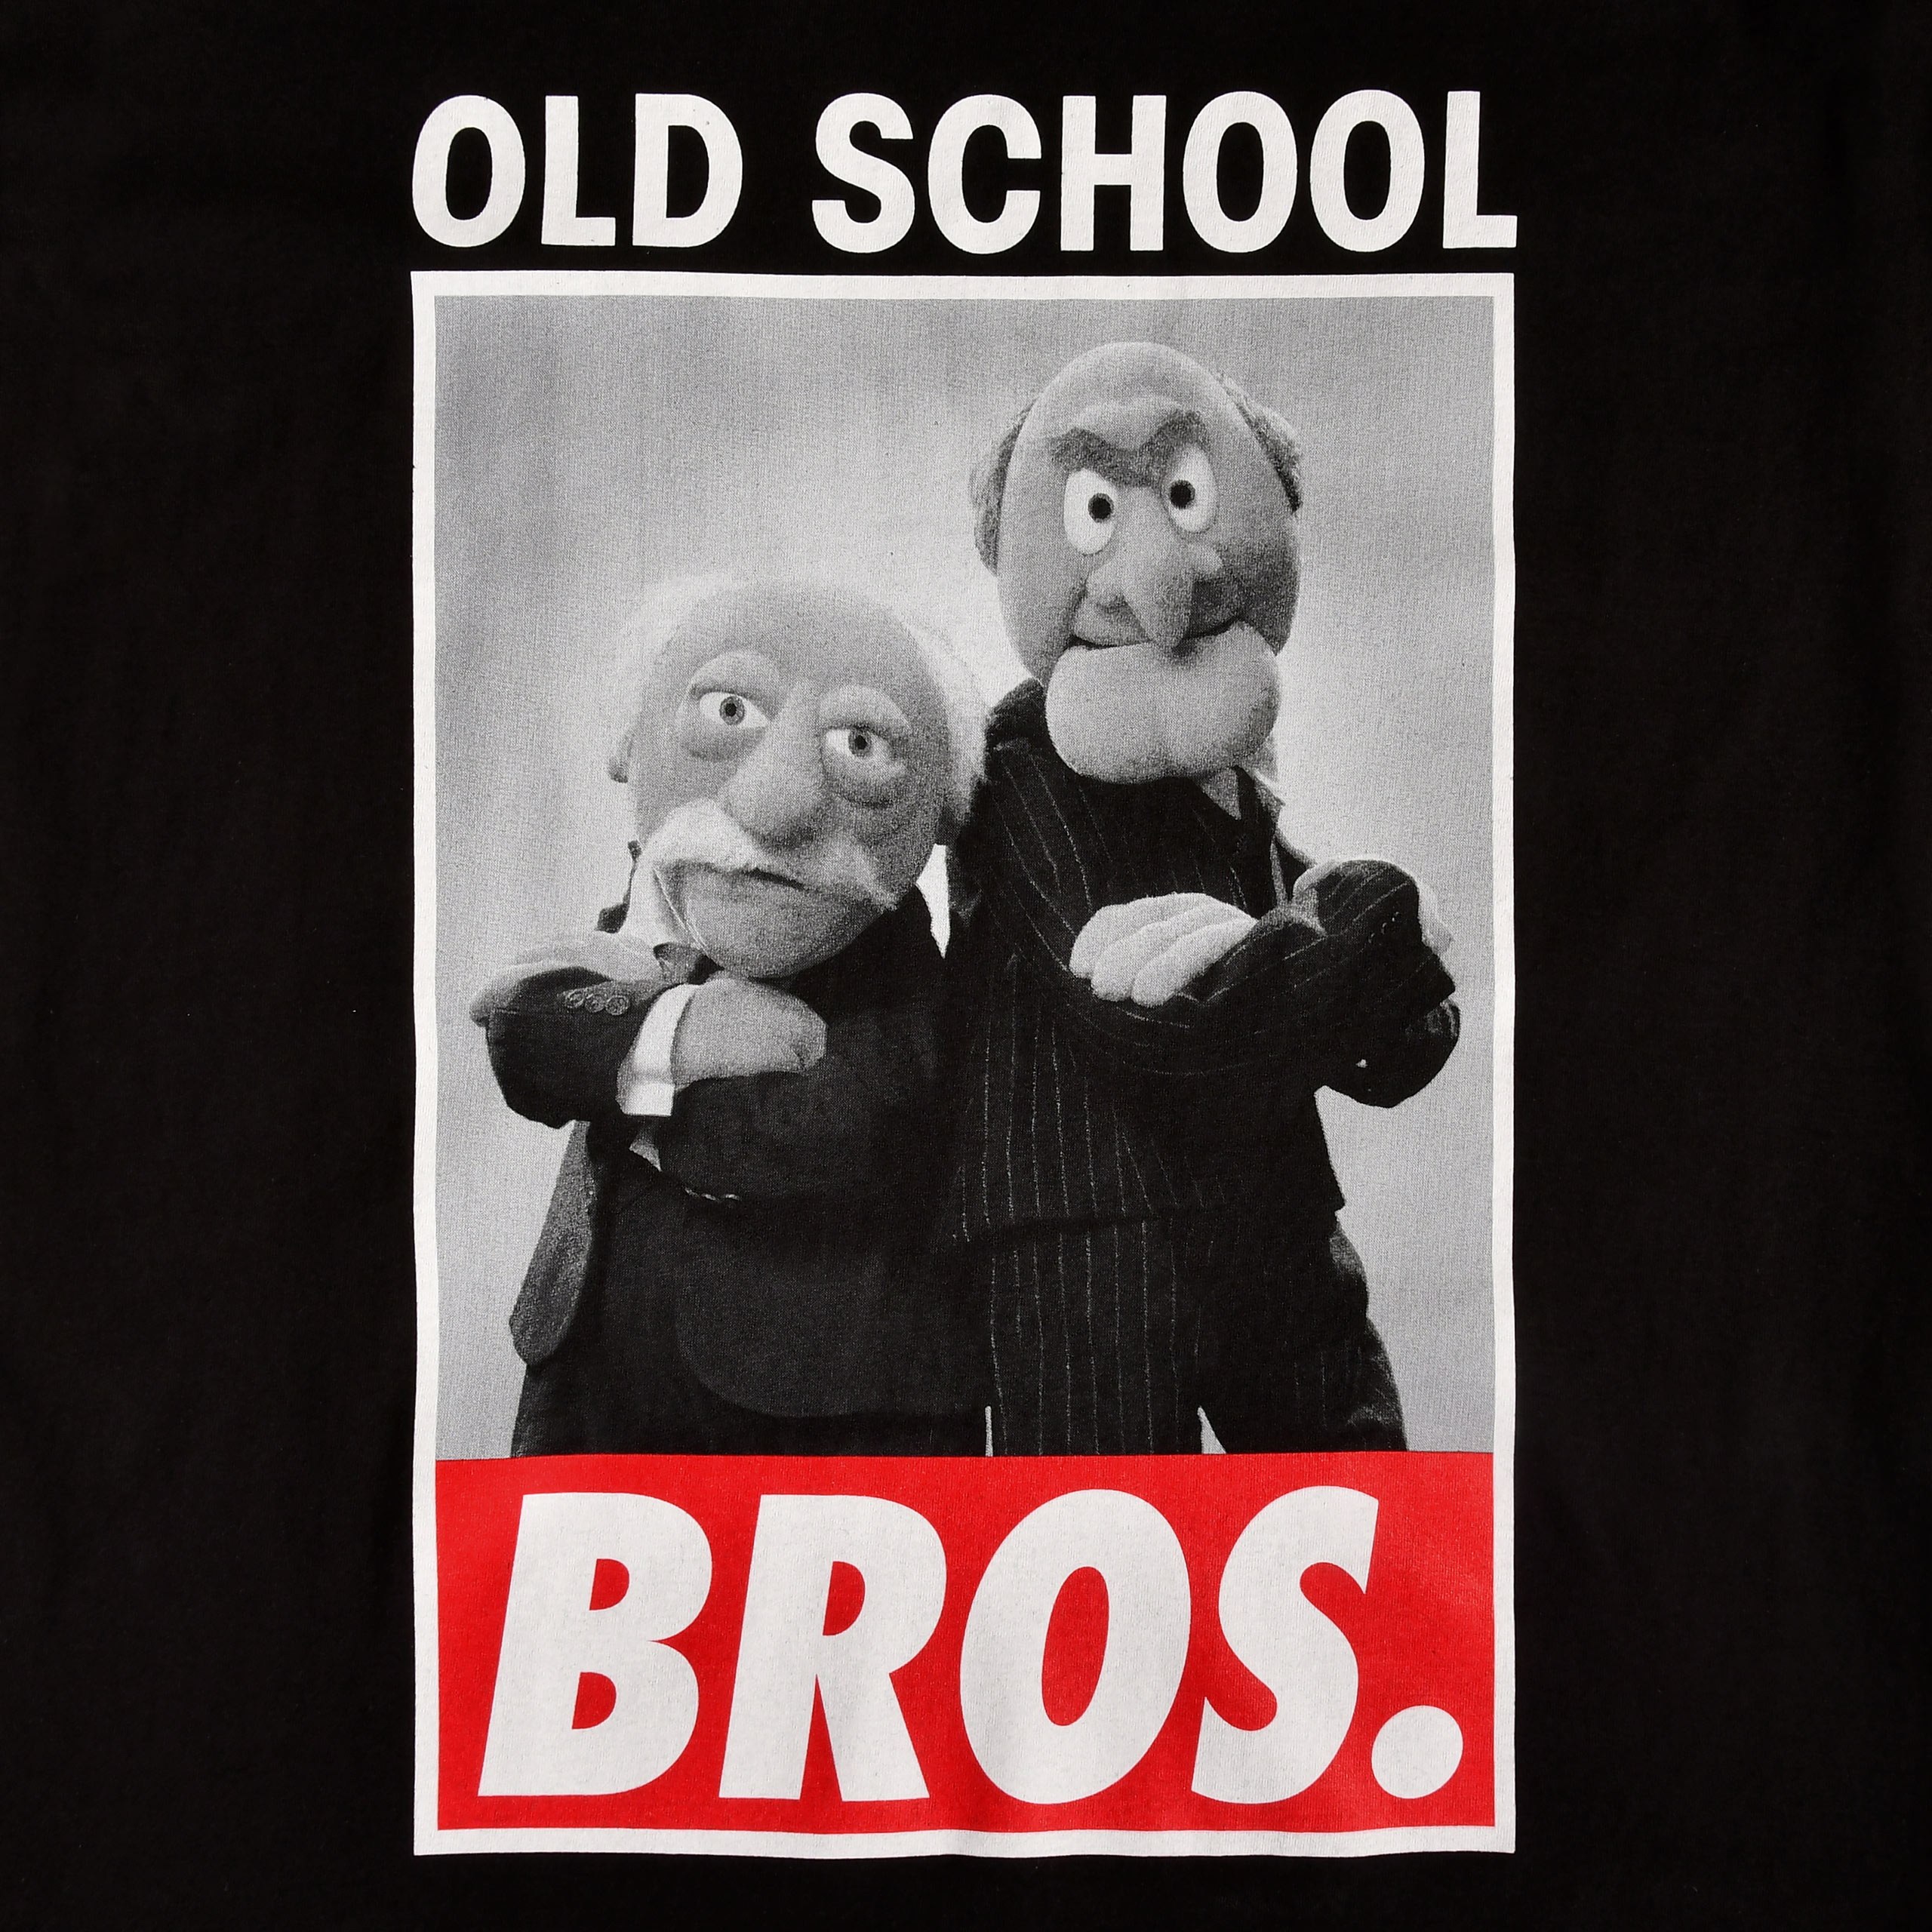 Muppets - Old School Bros. T-Shirt schwarz